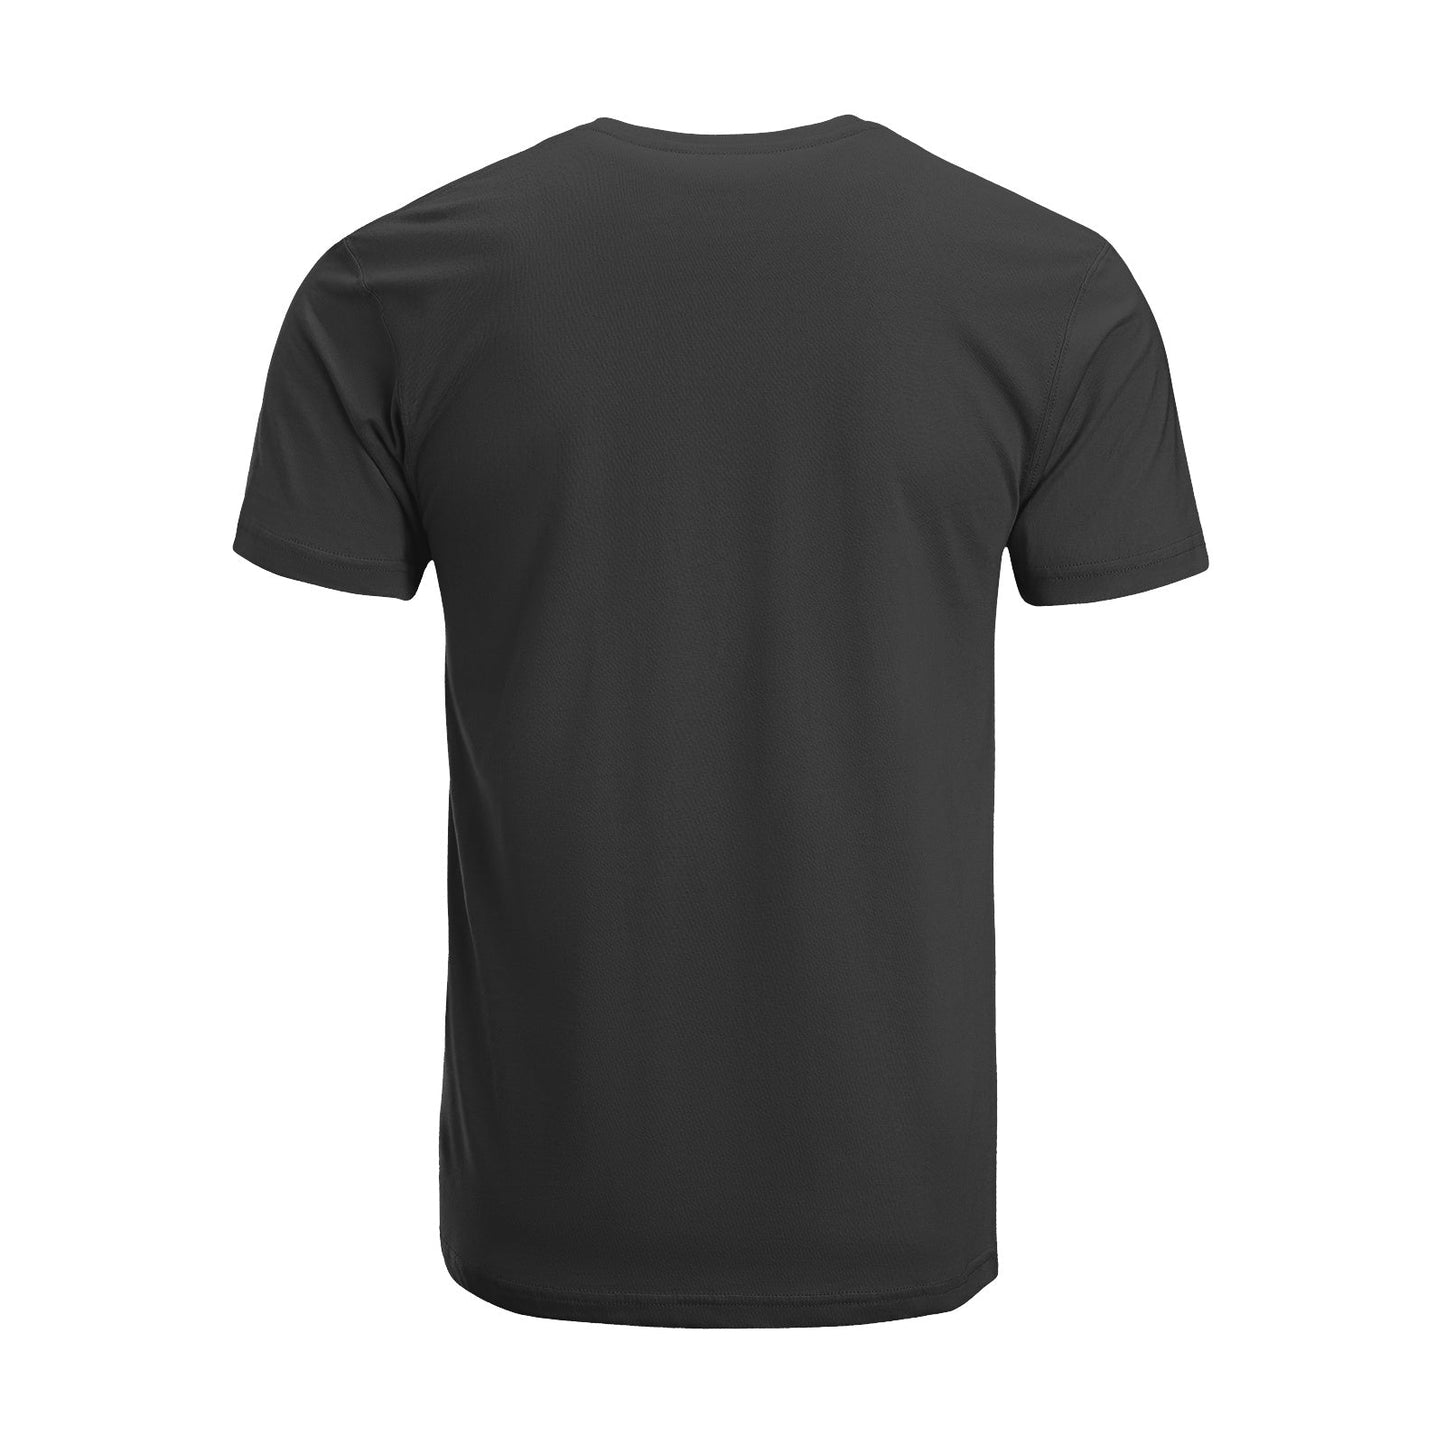 Unisex Short Sleeve Crew Neck Cotton Jersey T-Shirt TRUCK 32